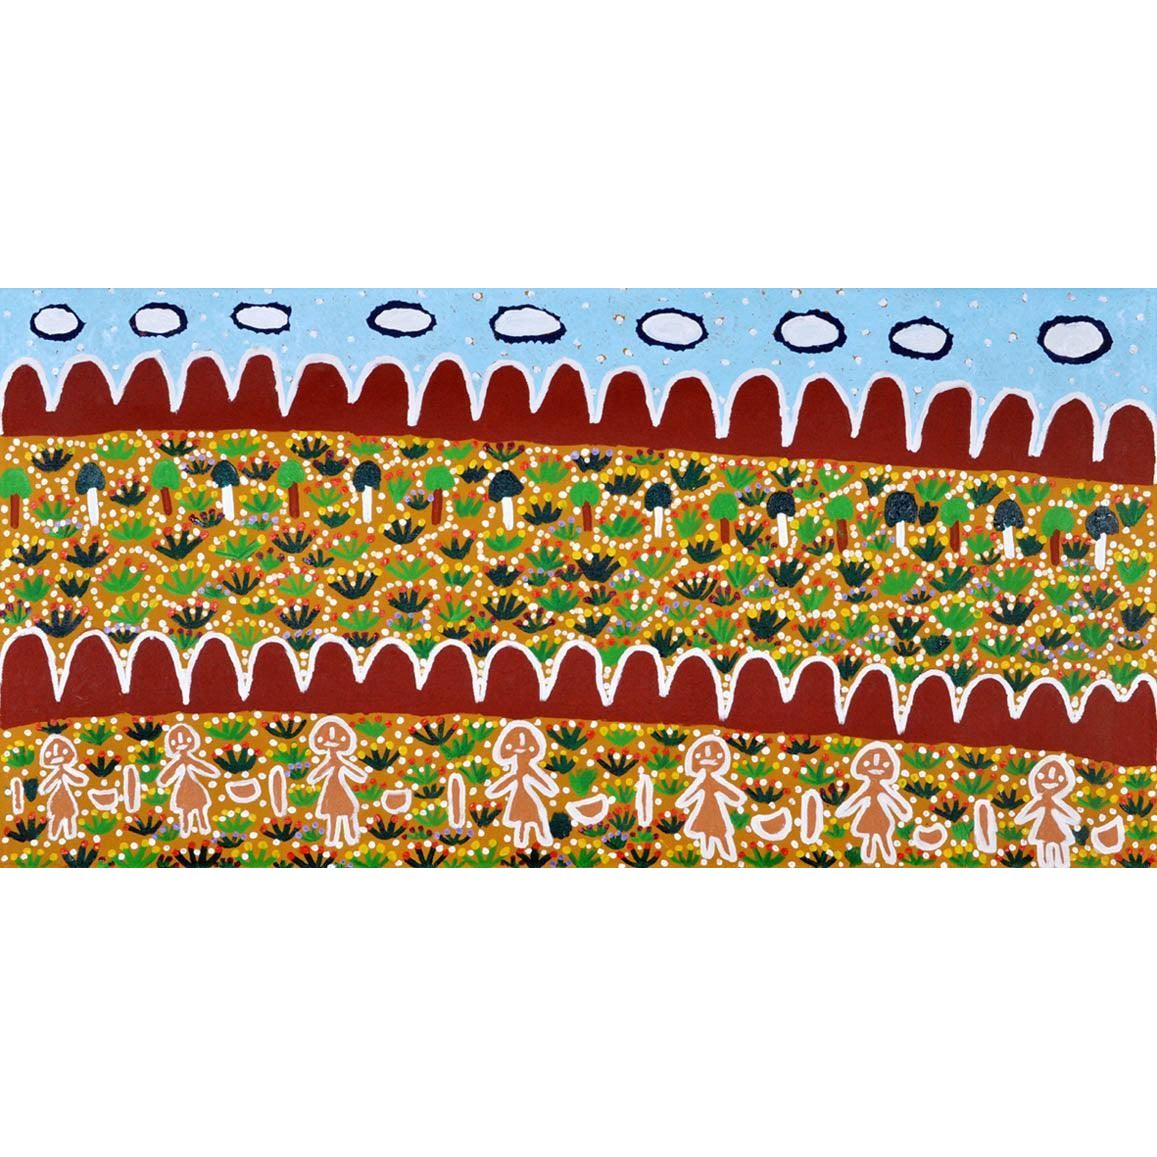 Molly Jugadai Napaltjarri paintings | Napaltjarri Sisters A15915 -